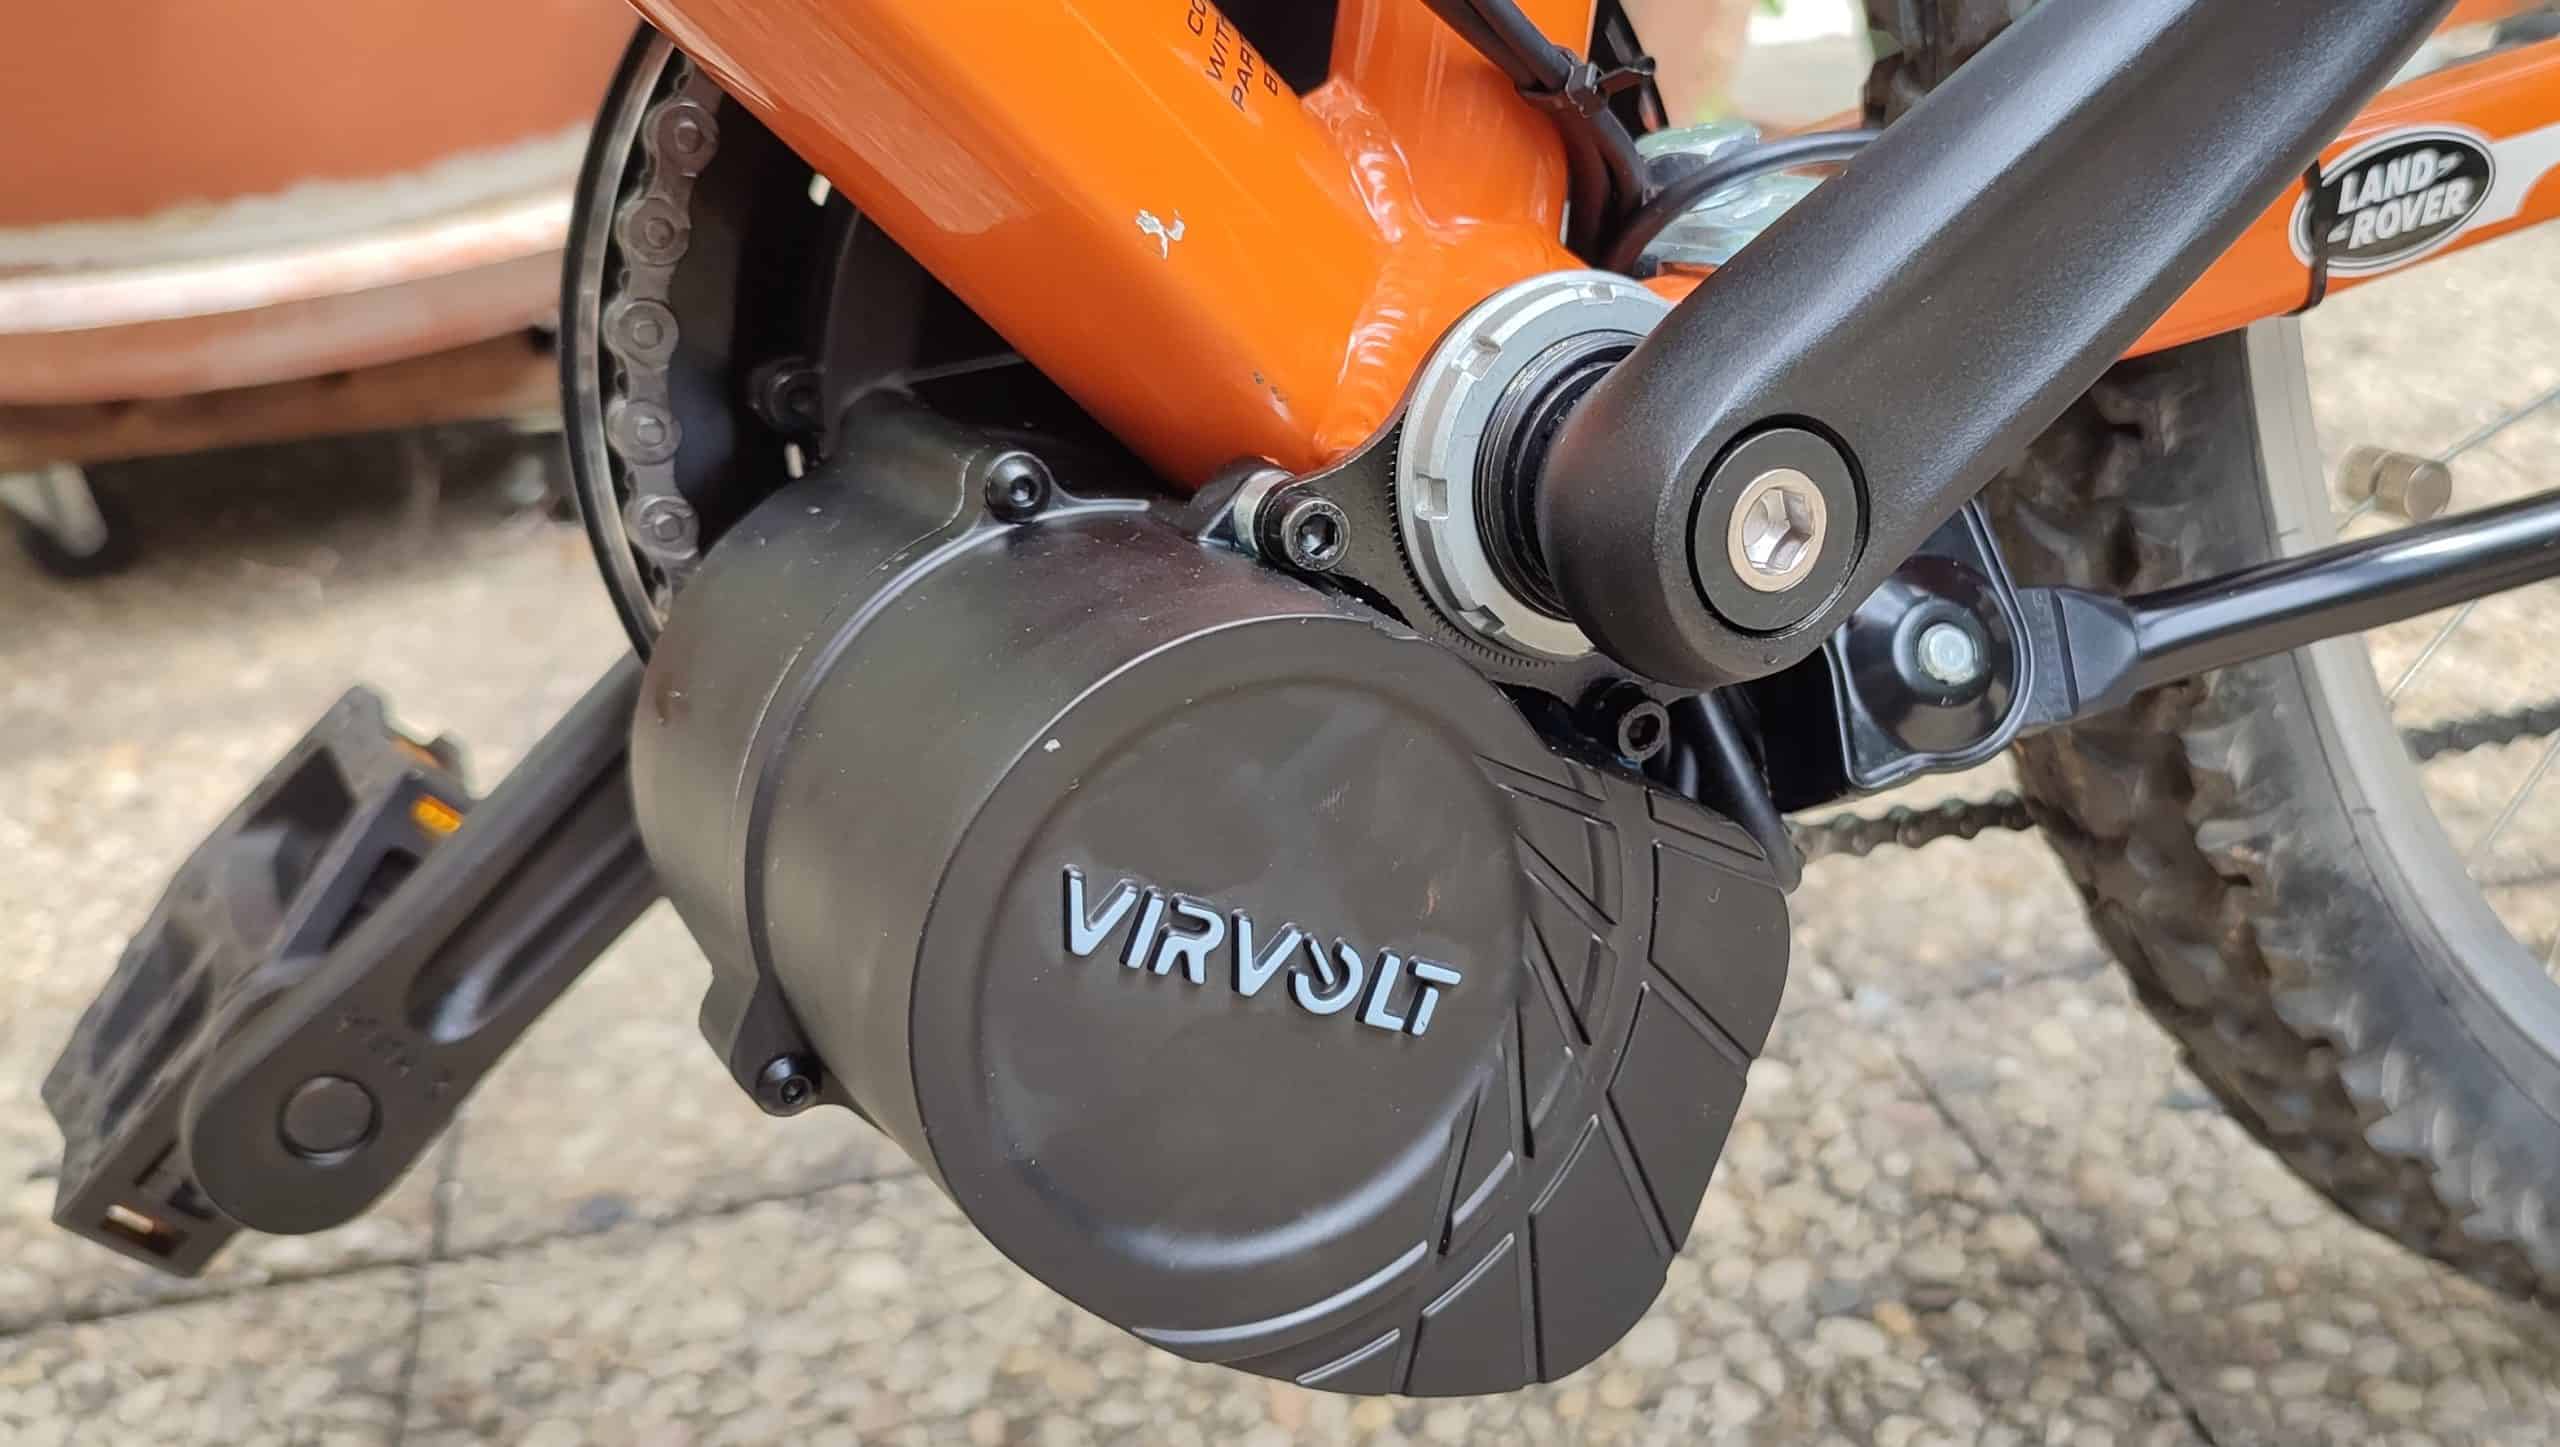 Moteur électrique Virvolt fixé dans le pédalier du vélo.